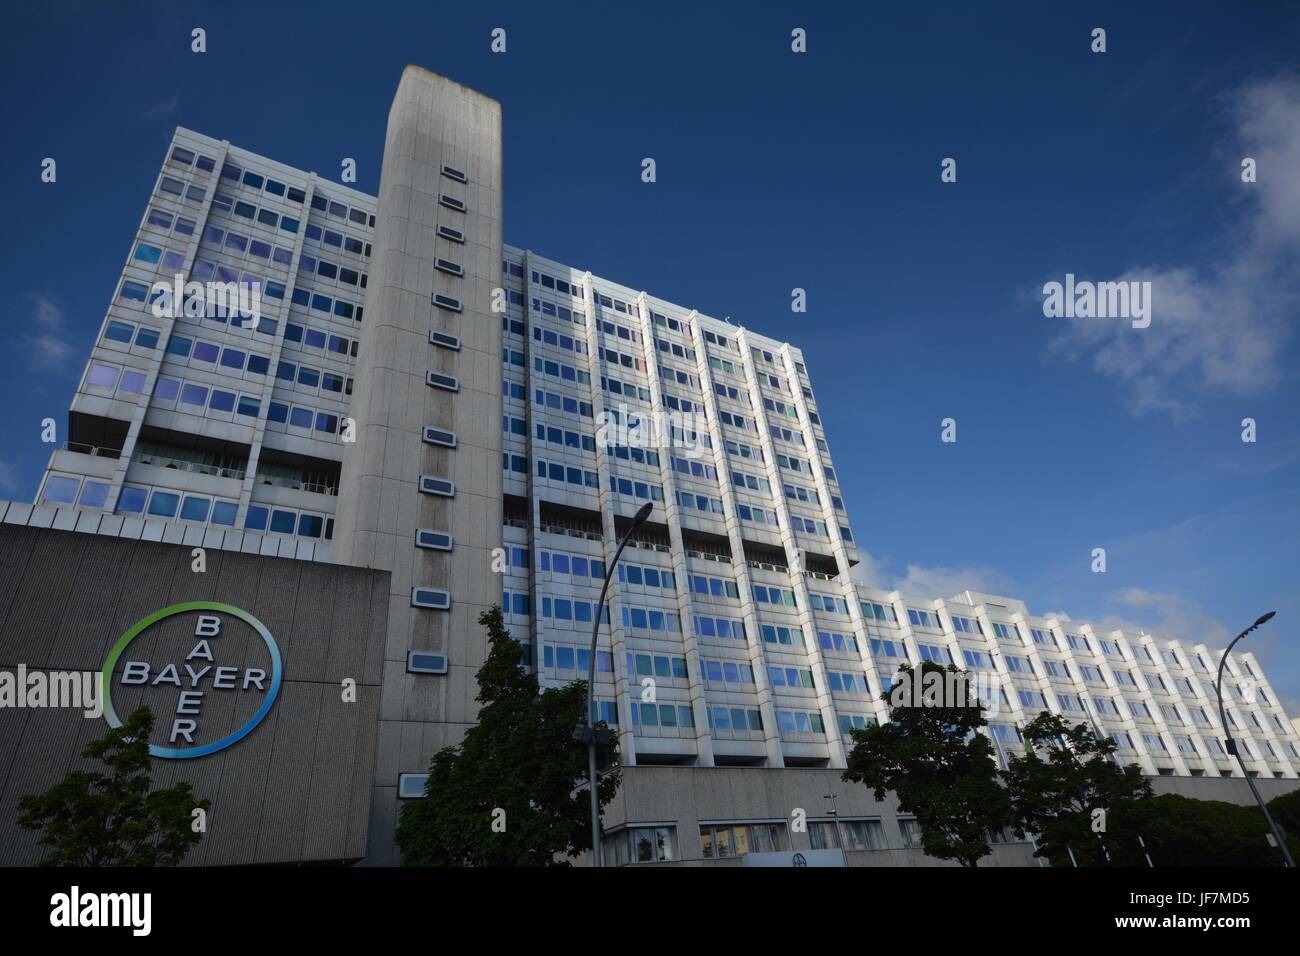 Bayer Pharma Ag Administration And Laboratory Buildings Of Bayer Stock Photo Alamy